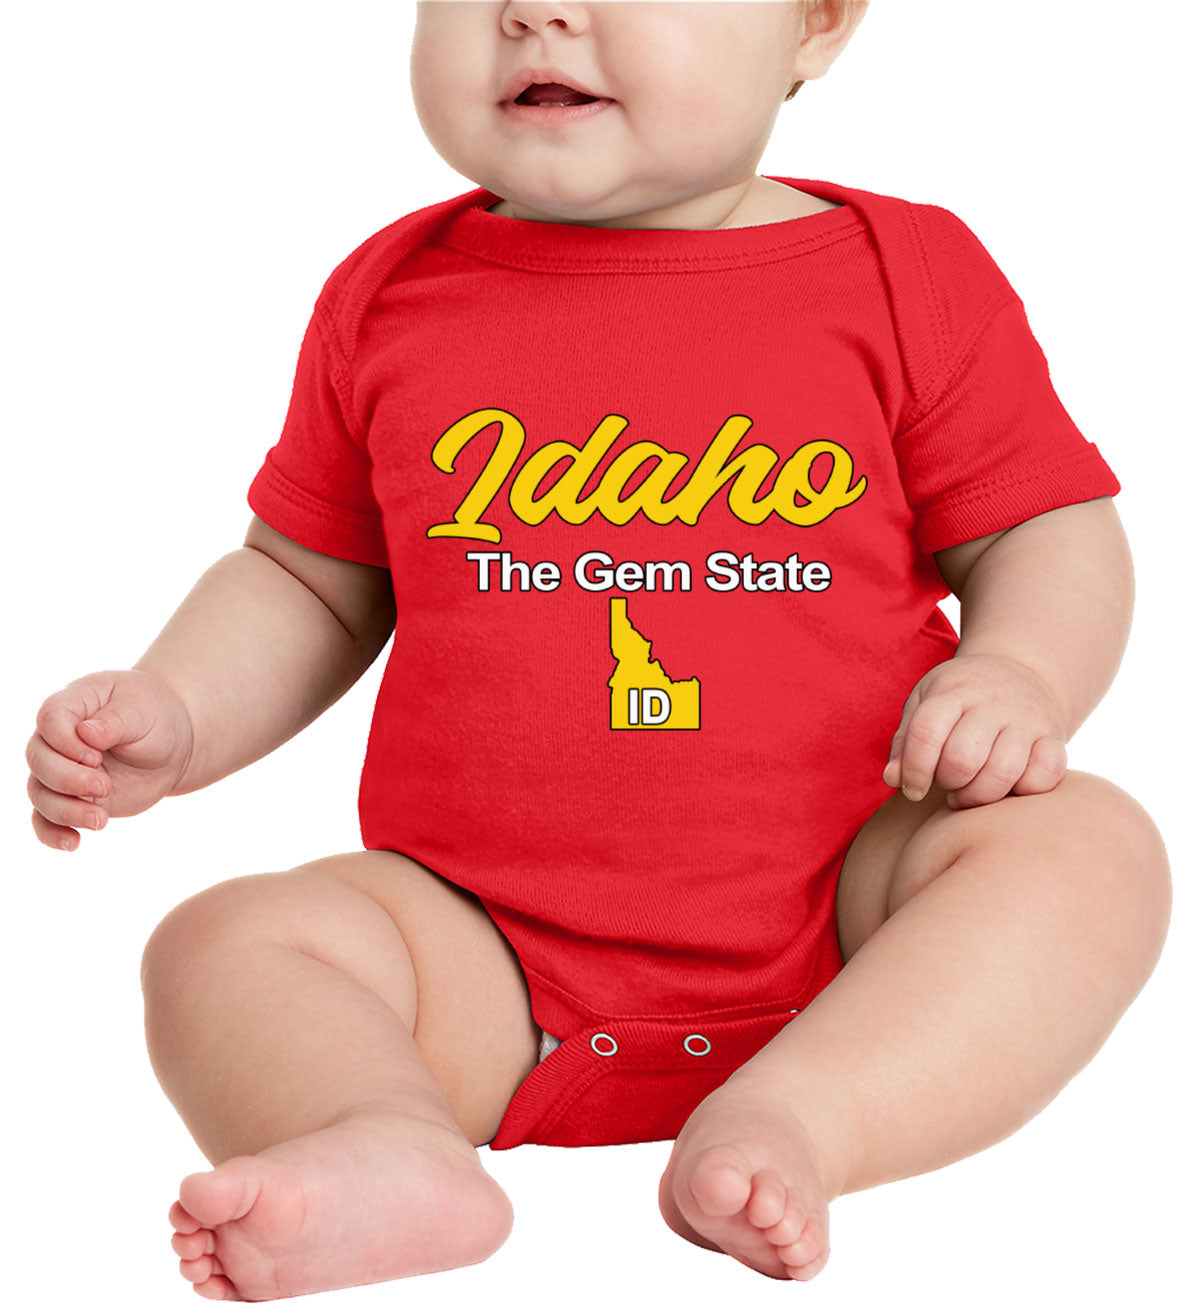 Idaho The Gem State Baby Onesie